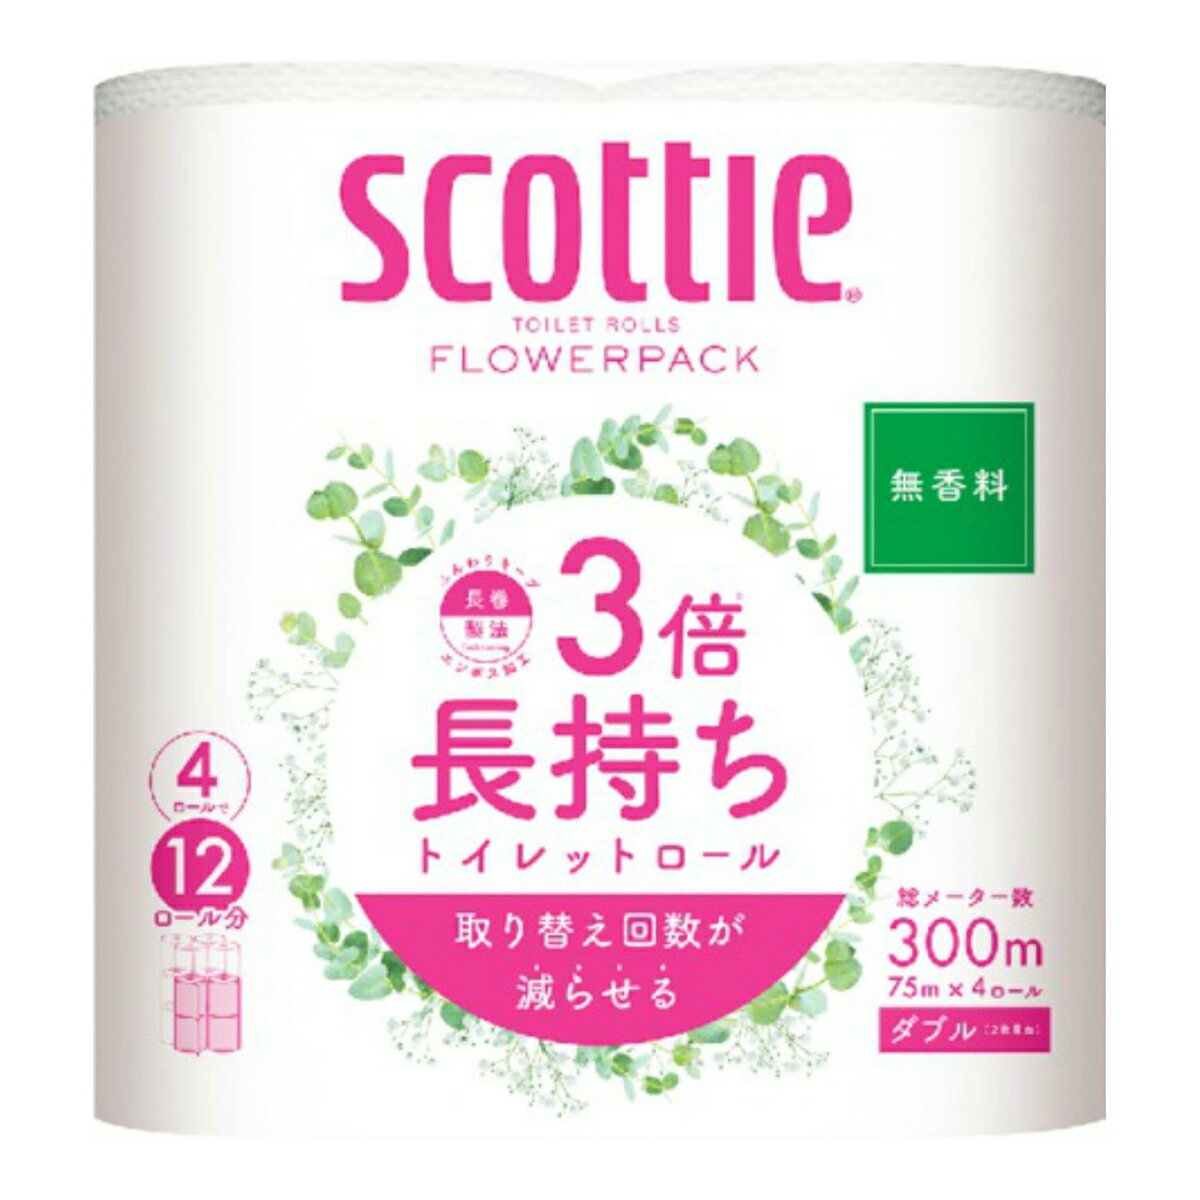 【送料込】日本製紙 クレシア スコッティ フラワーパック 3倍長持ち トイレットロール ダブル 無香 4ロール 1個